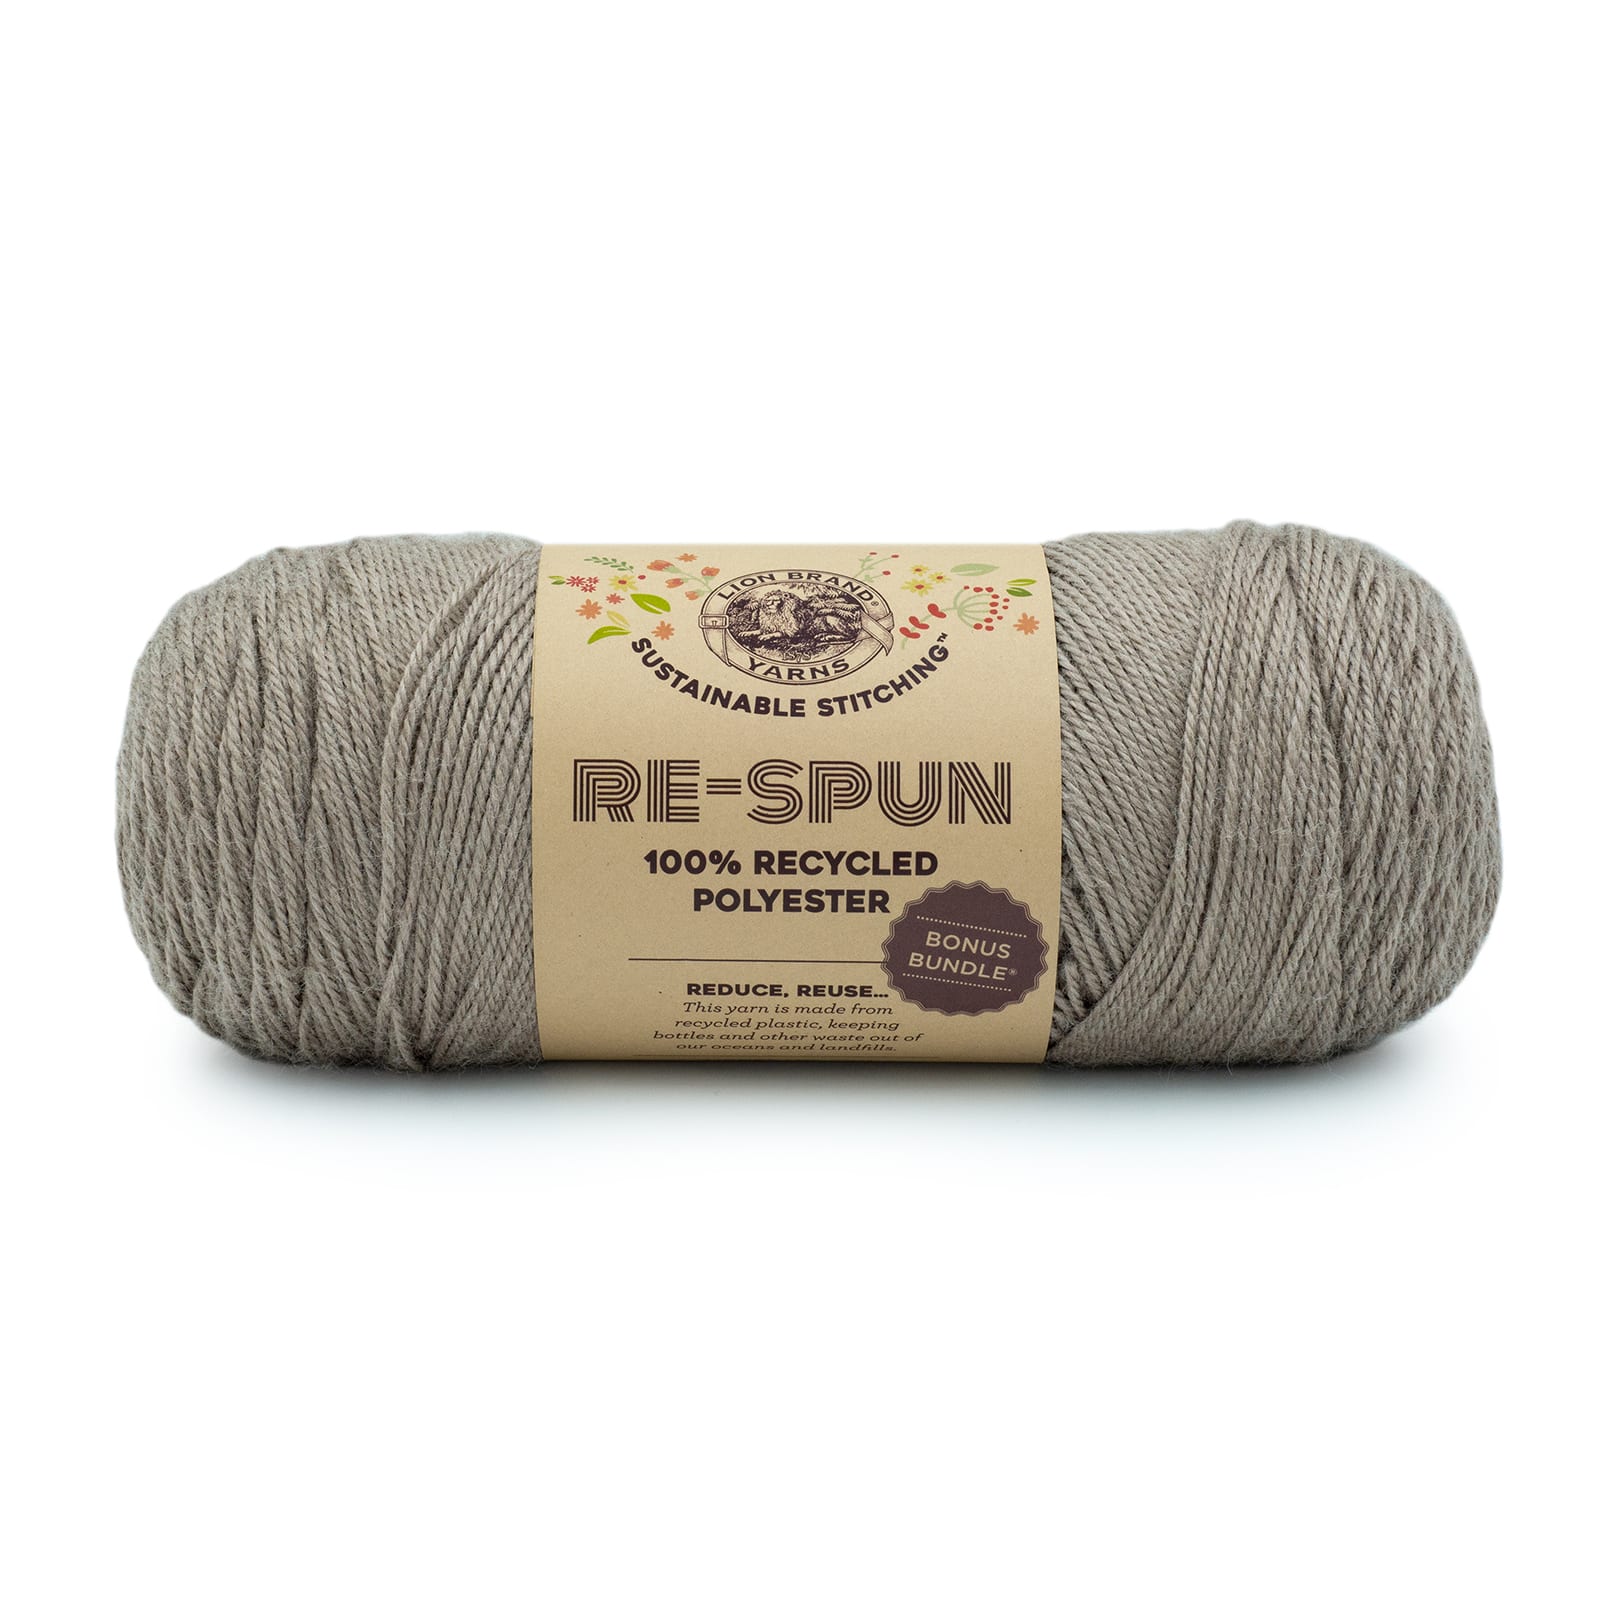 Lion Brand® Sustainable Stitching™ Bonus Bundle® Re-Spun Yarn